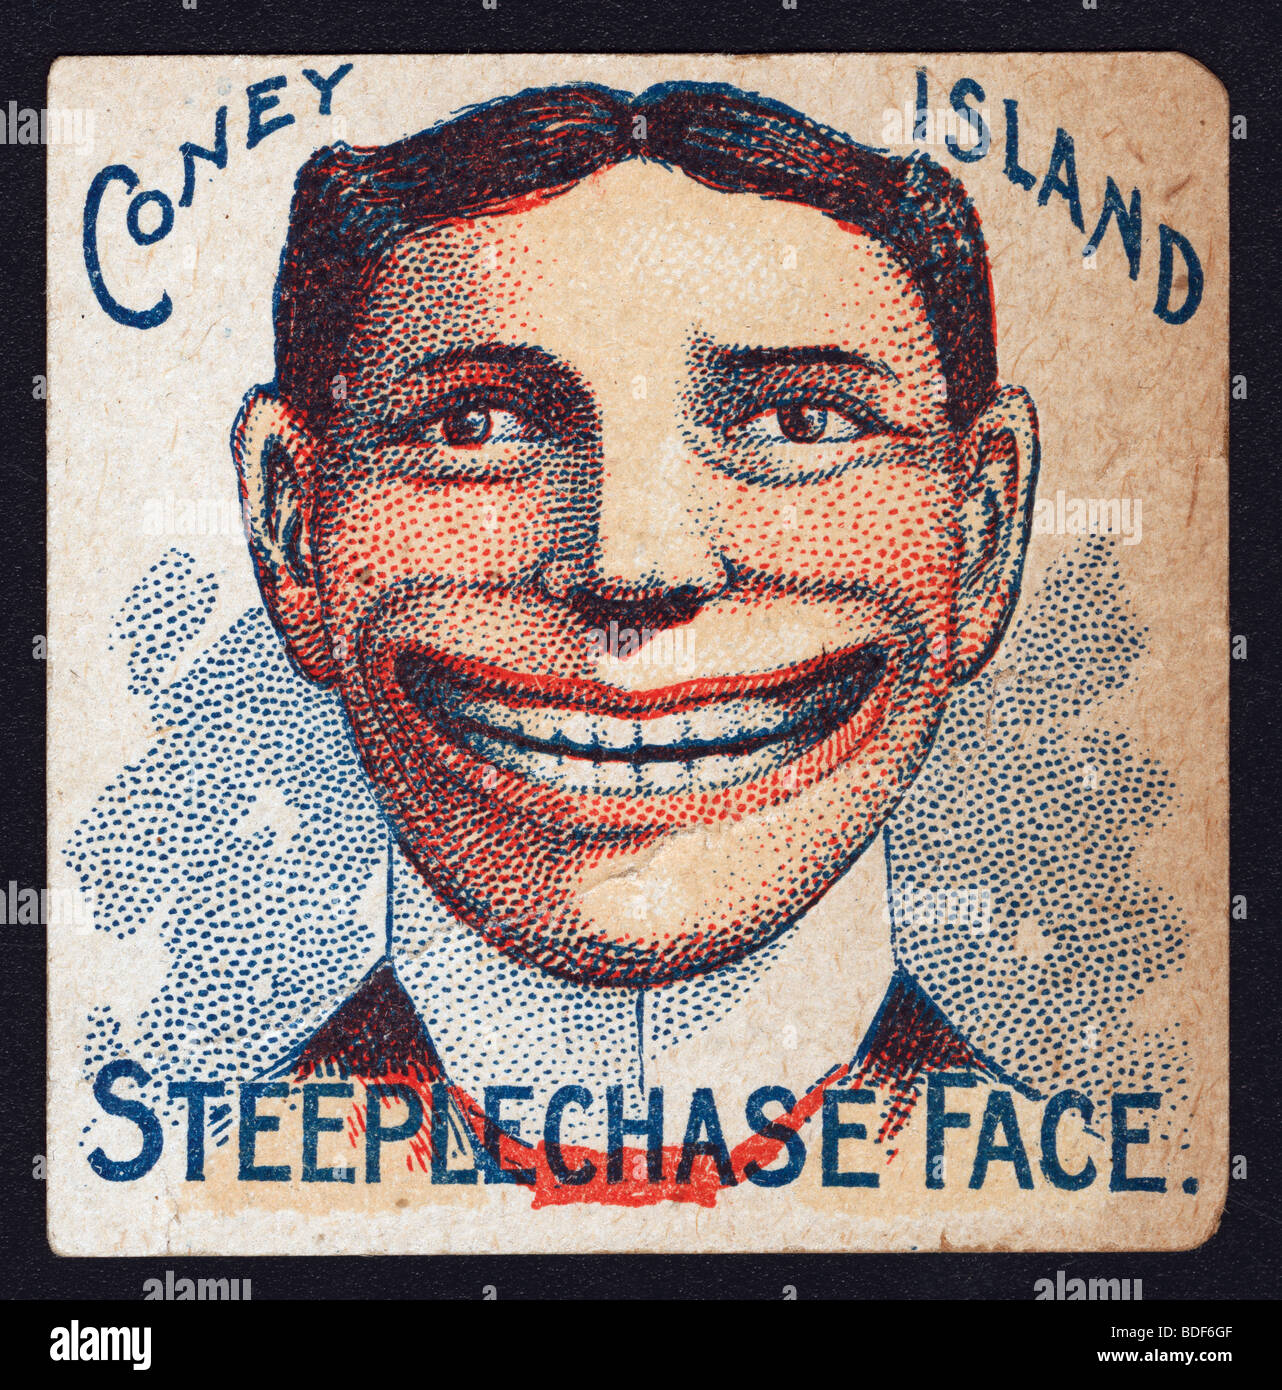 Jack di siepi di Coney Island mascotte Foto Stock